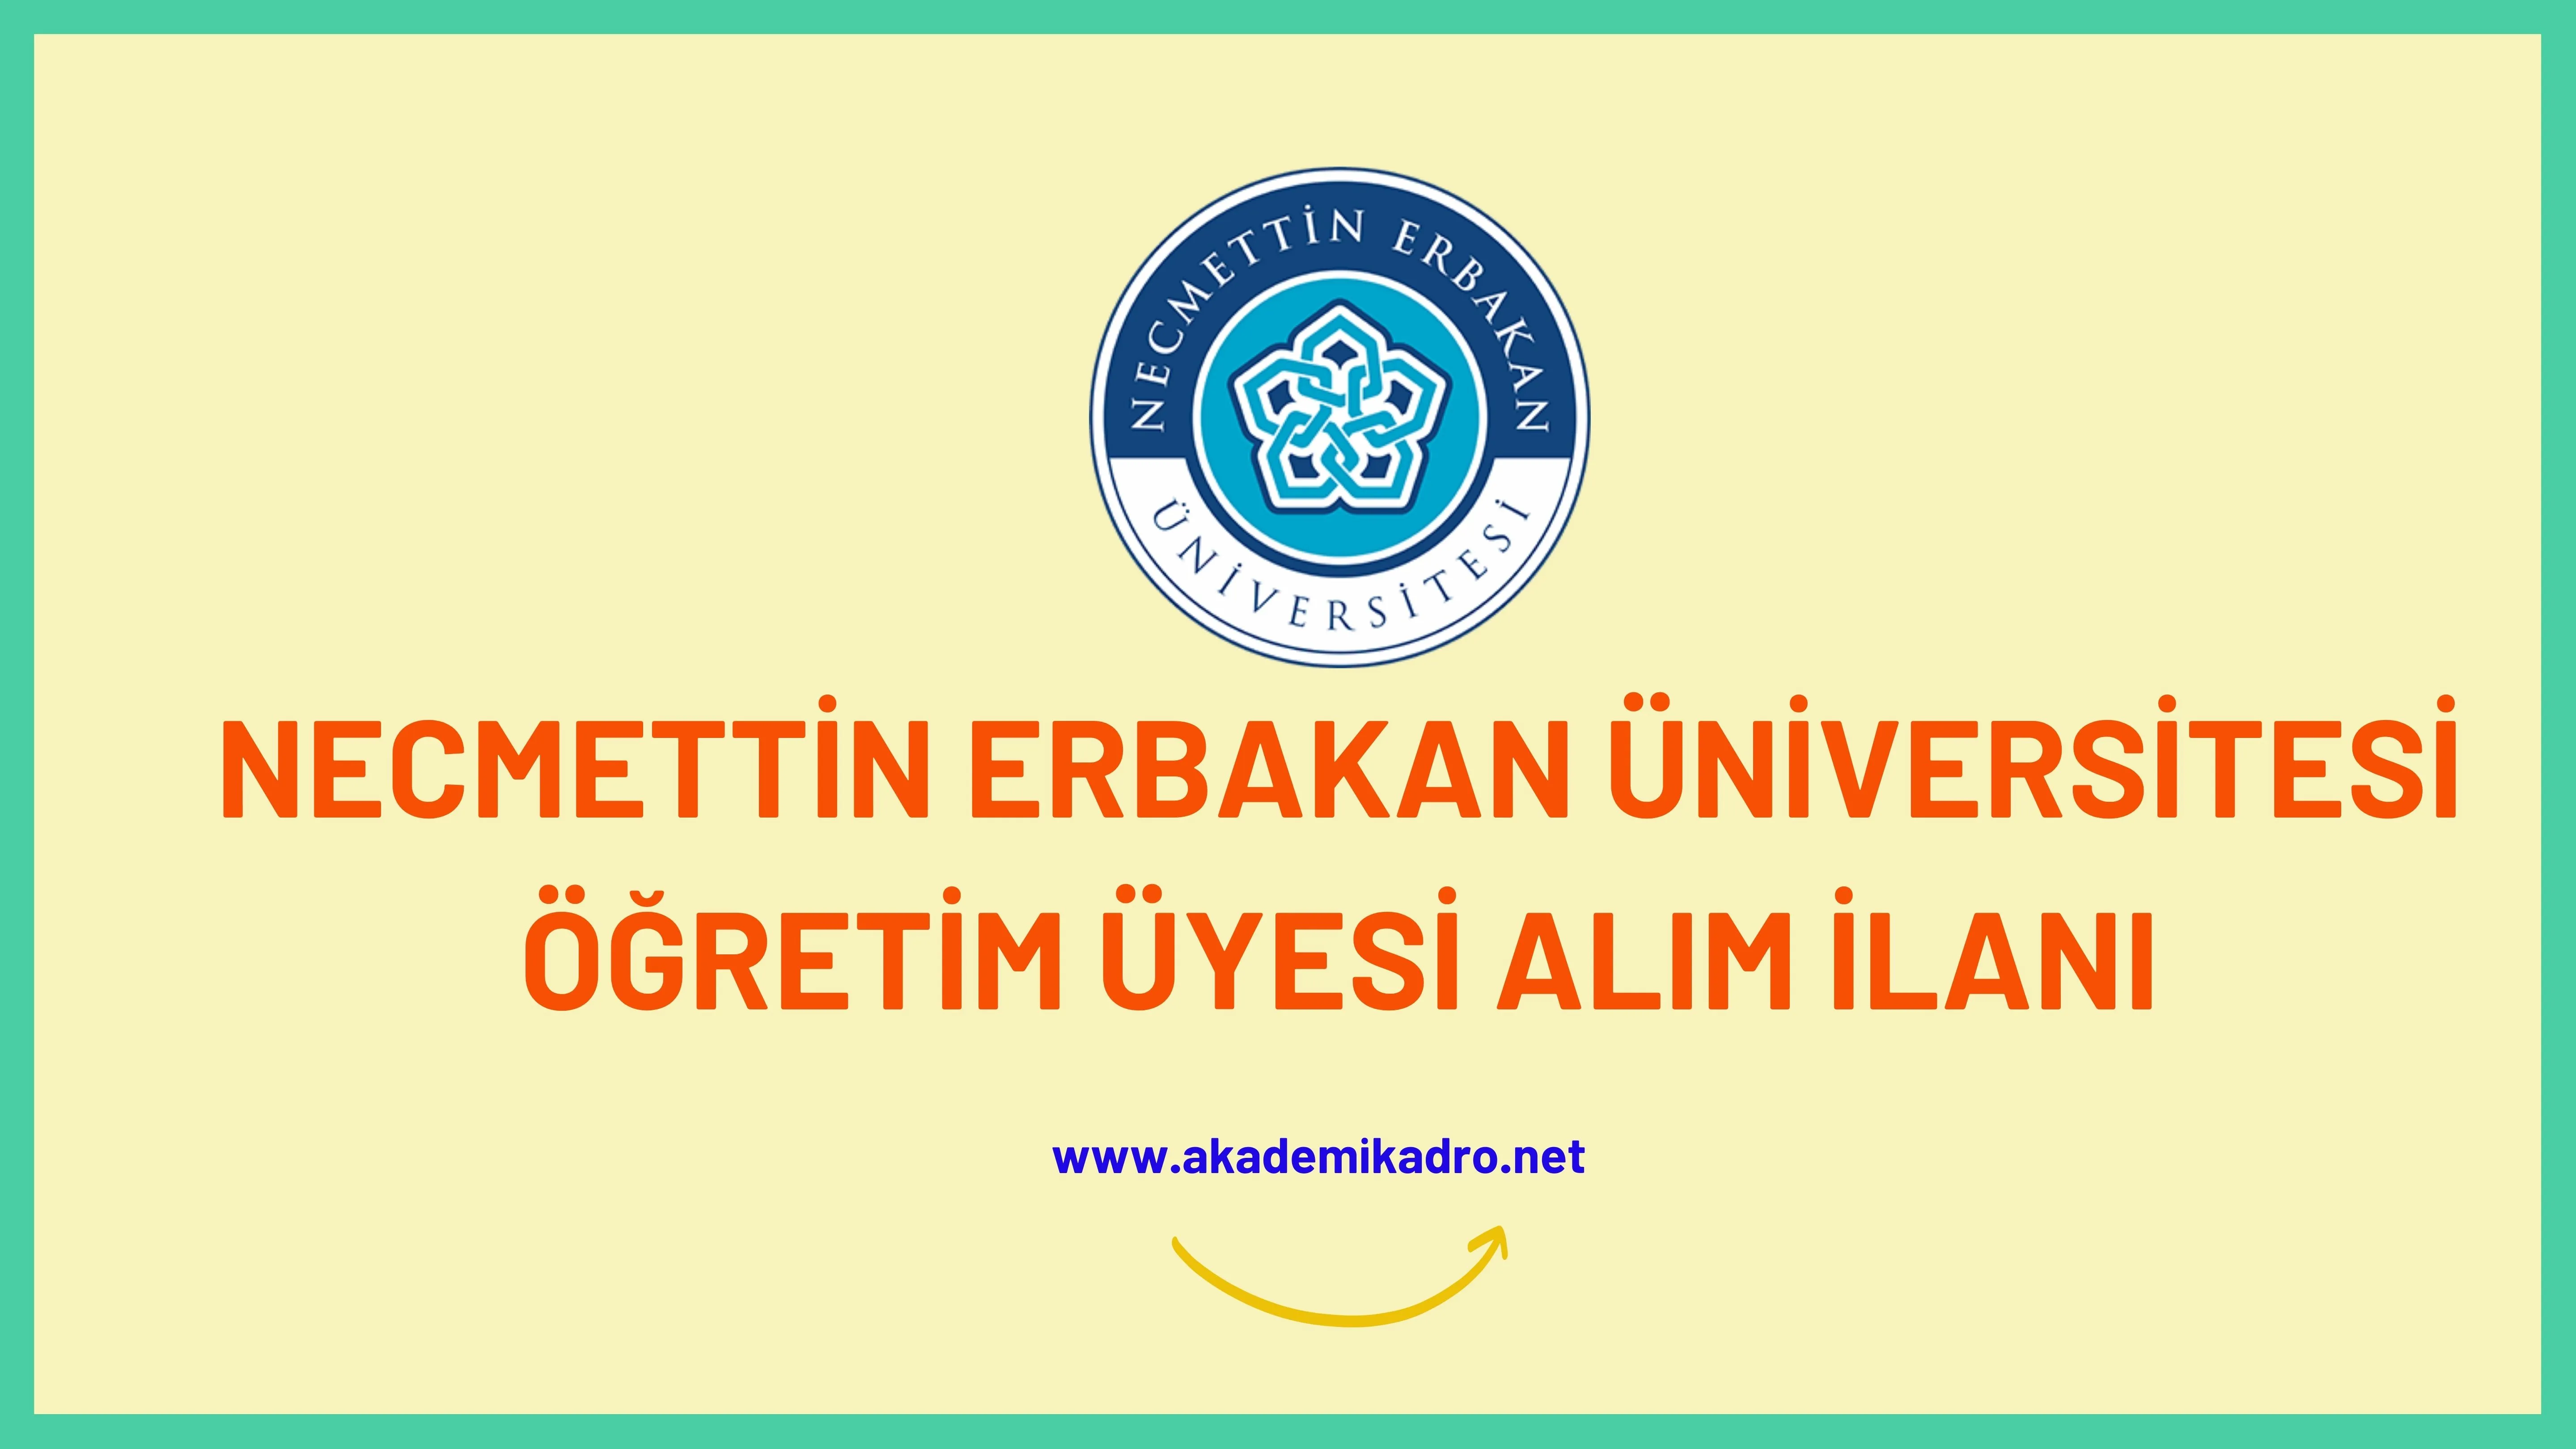 Necmettin Erbakan Üniversitesi birçok alandan 9 Öğretim üyesi alacak.